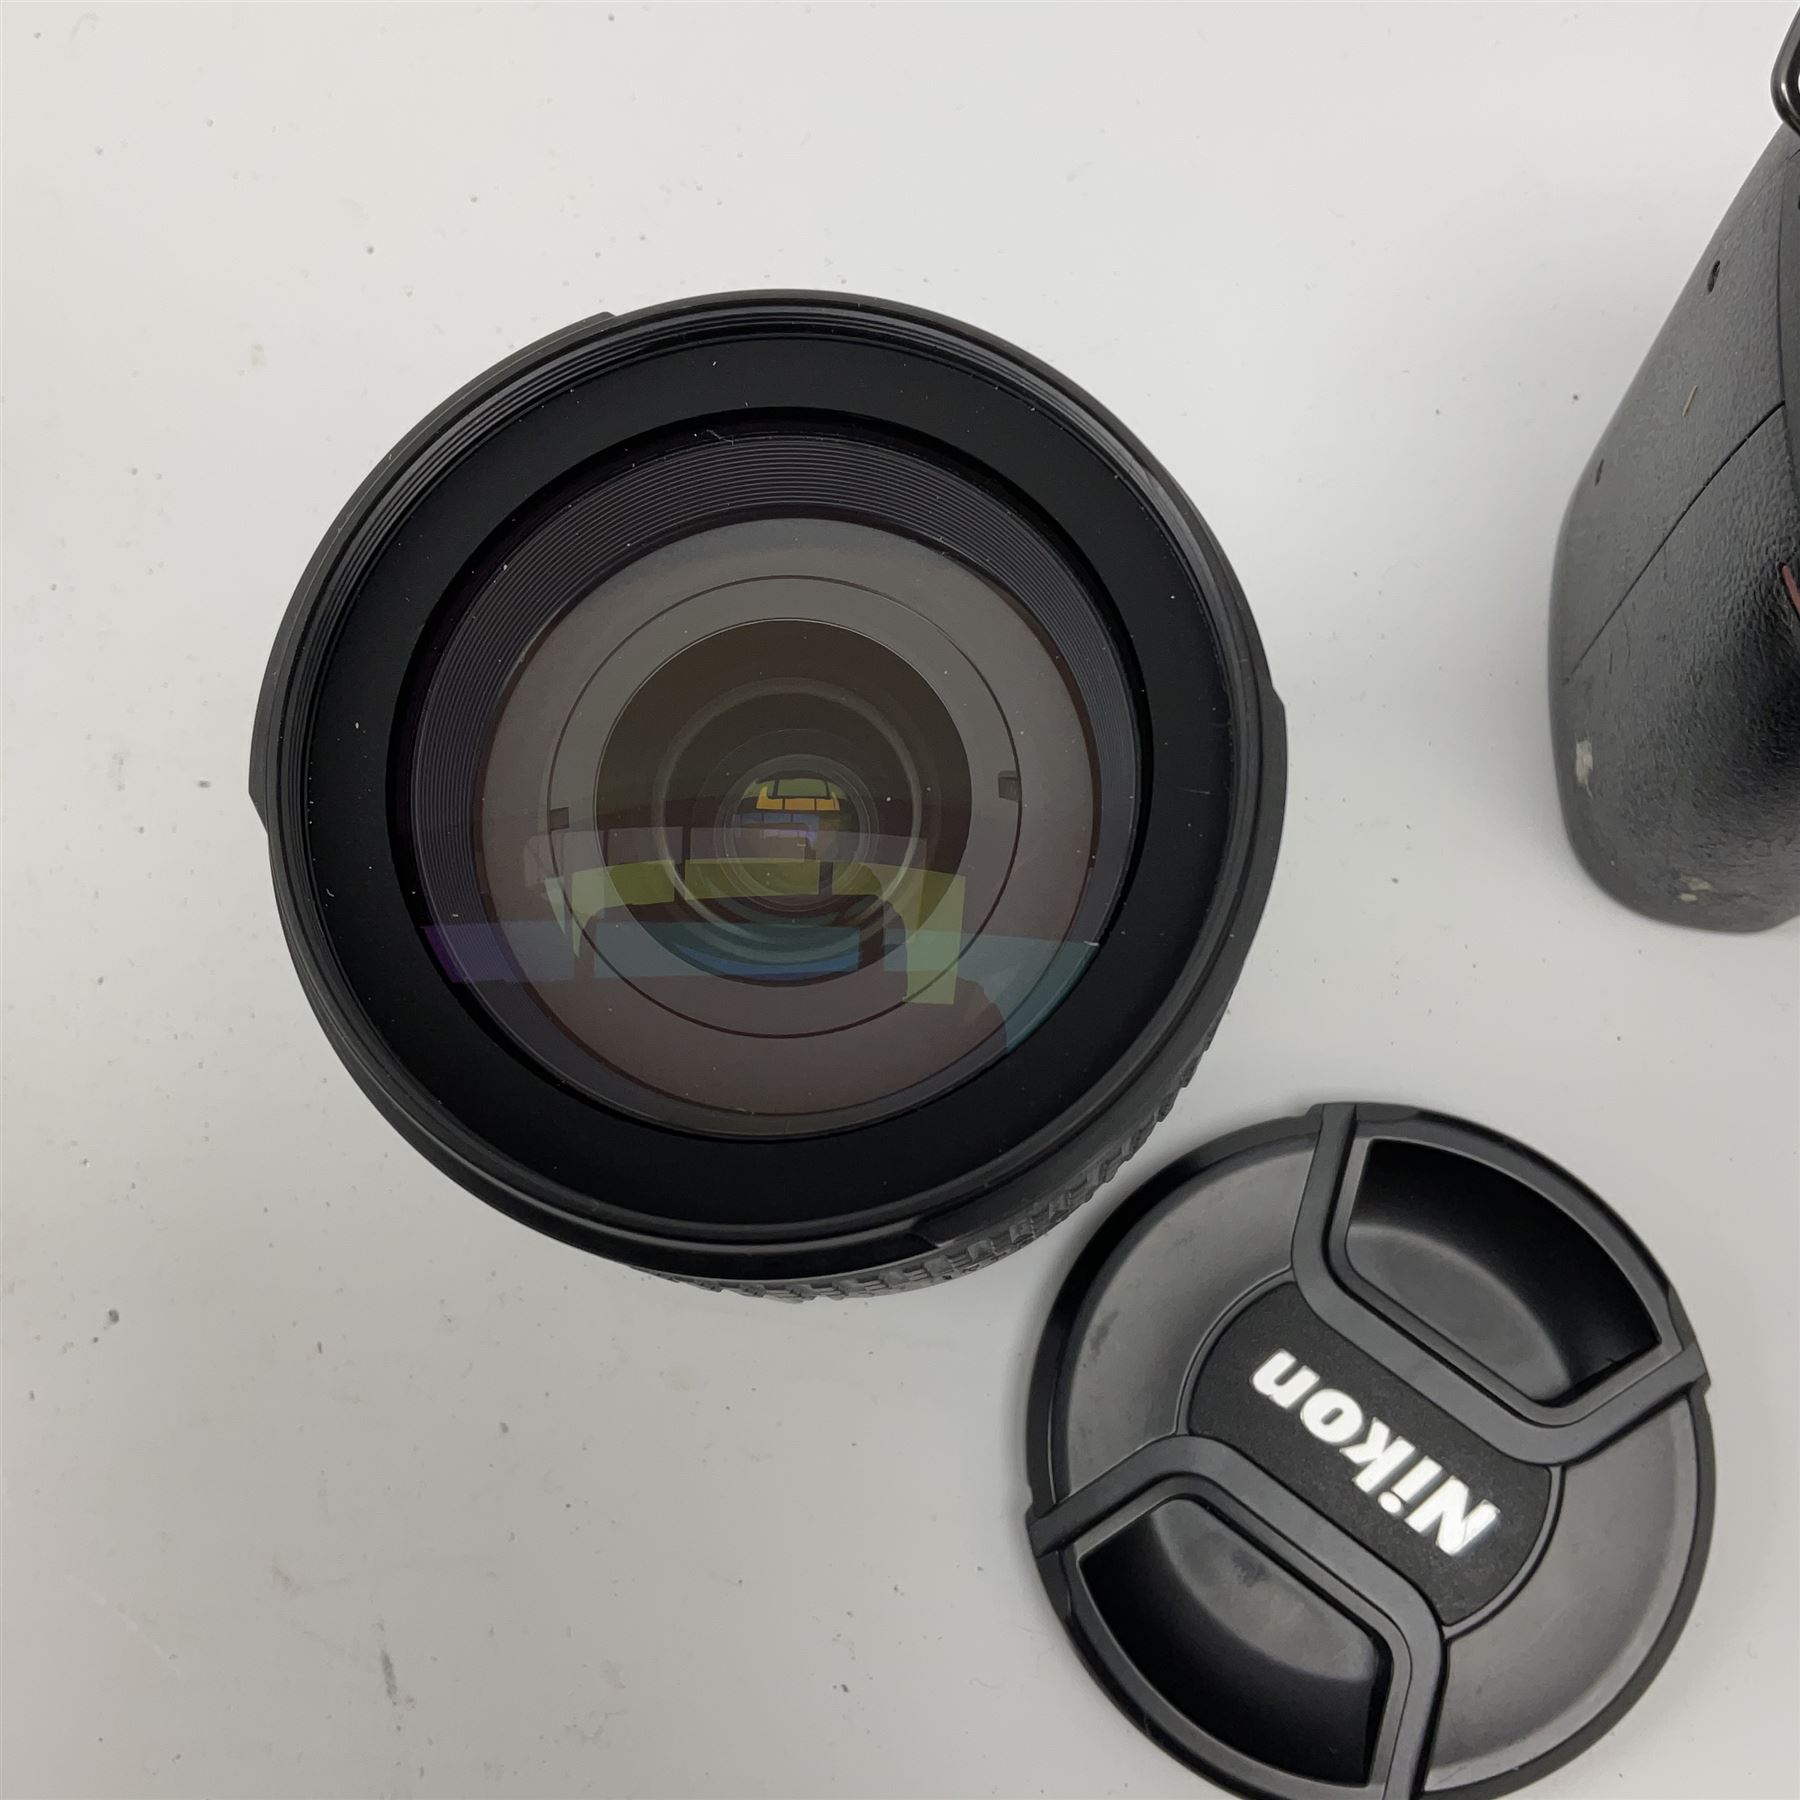 Nikon D70 Kit with AF-S Zoom Nikkor 18-70mm f/3.5~4.5G lens - Image 7 of 8